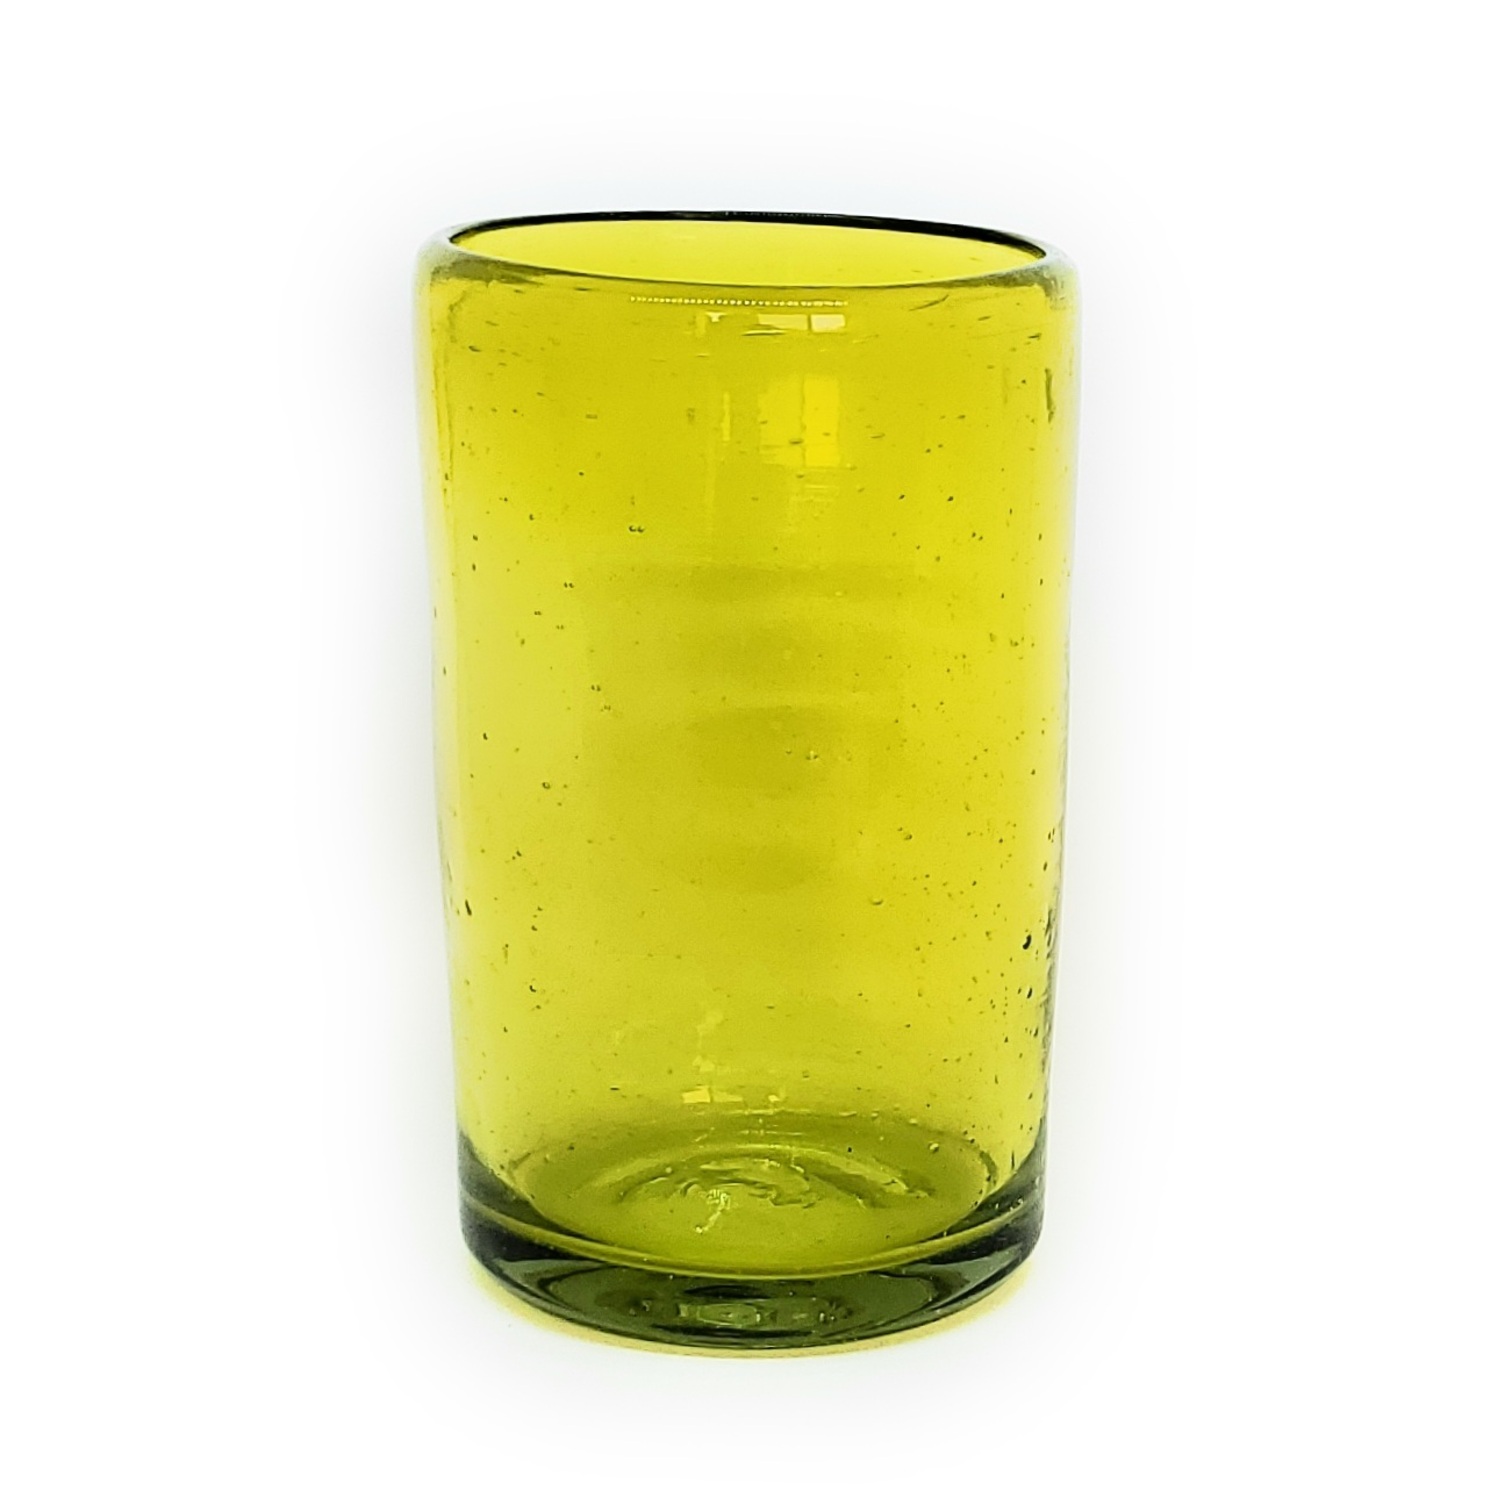 Ofertas / Juego de 6 vasos grandes color amarillos / �stos artesanales vasos le dar�n un toque cl�sico a su bebida favorita.